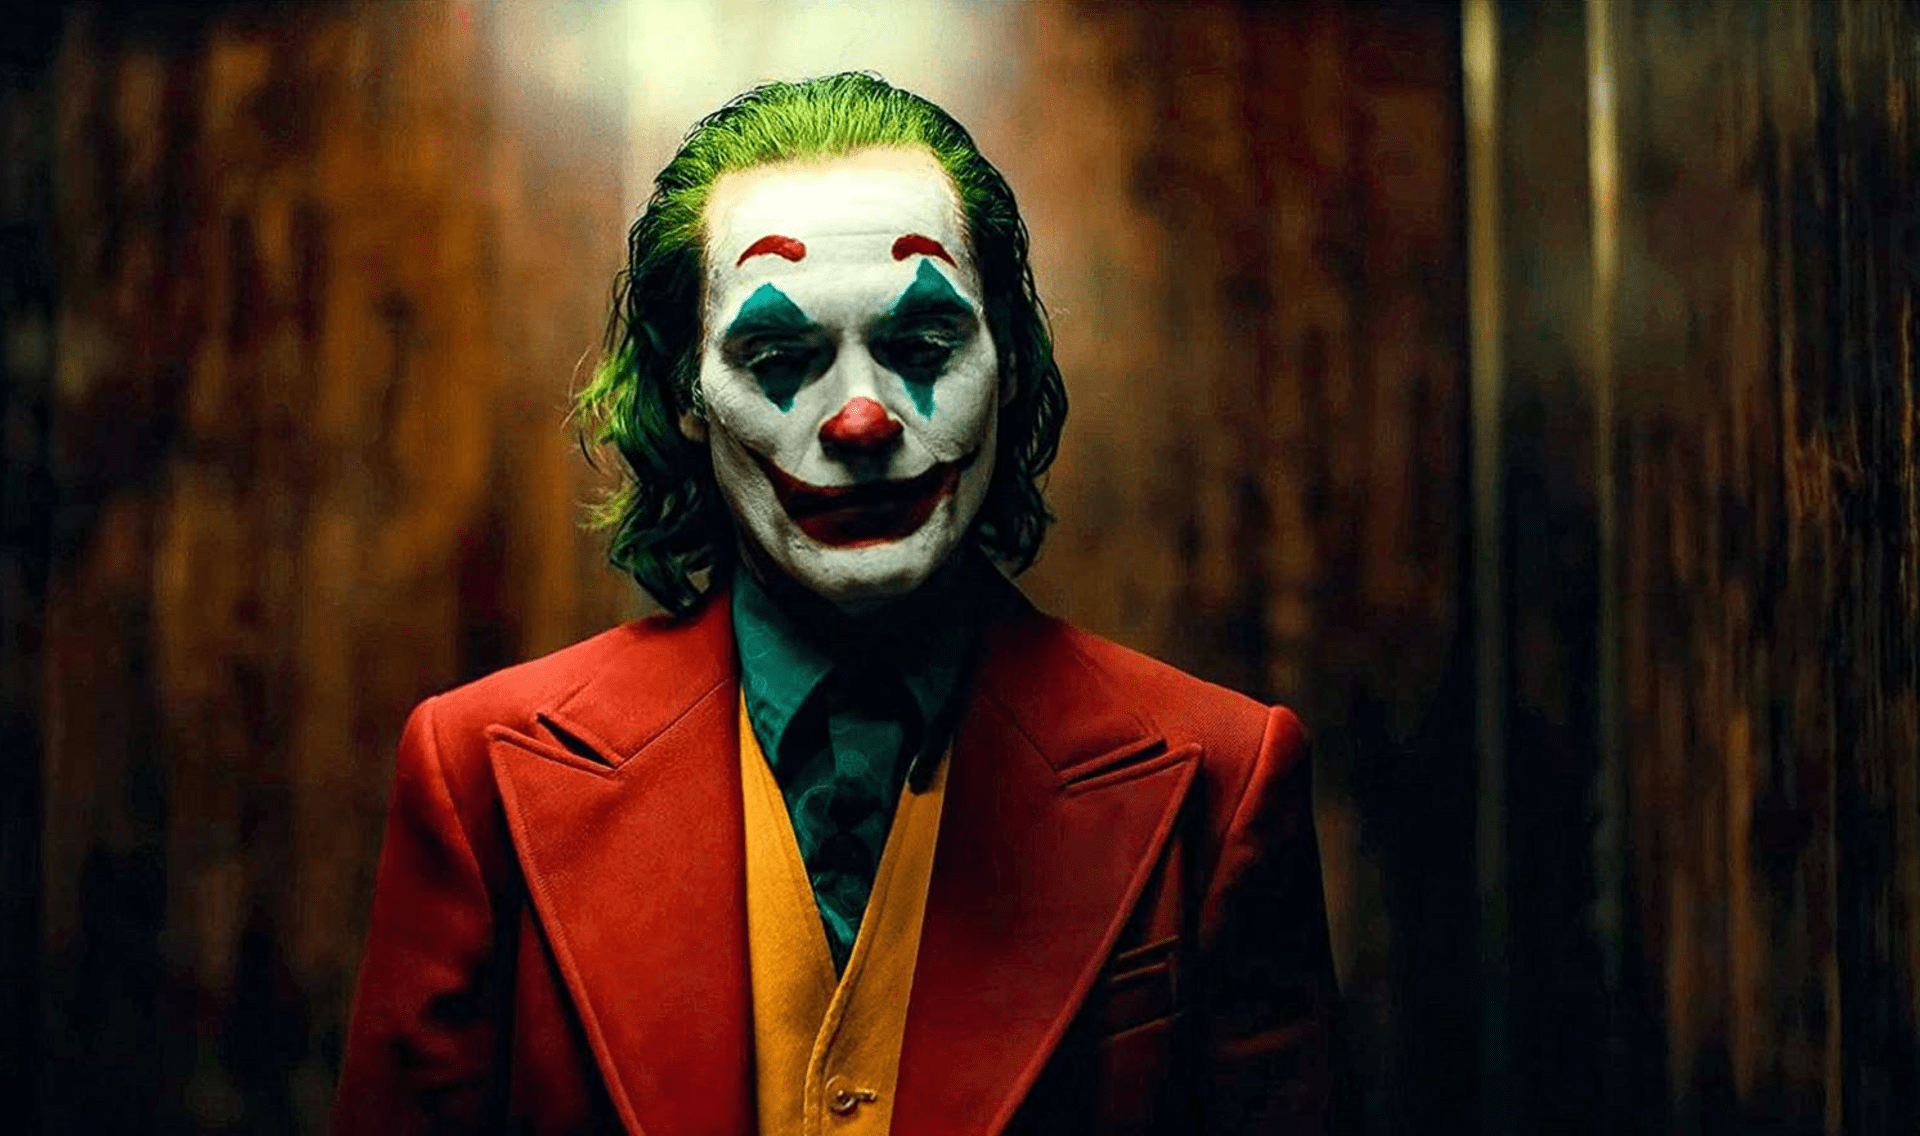 Útočník měl masku známého padoucha Jokera